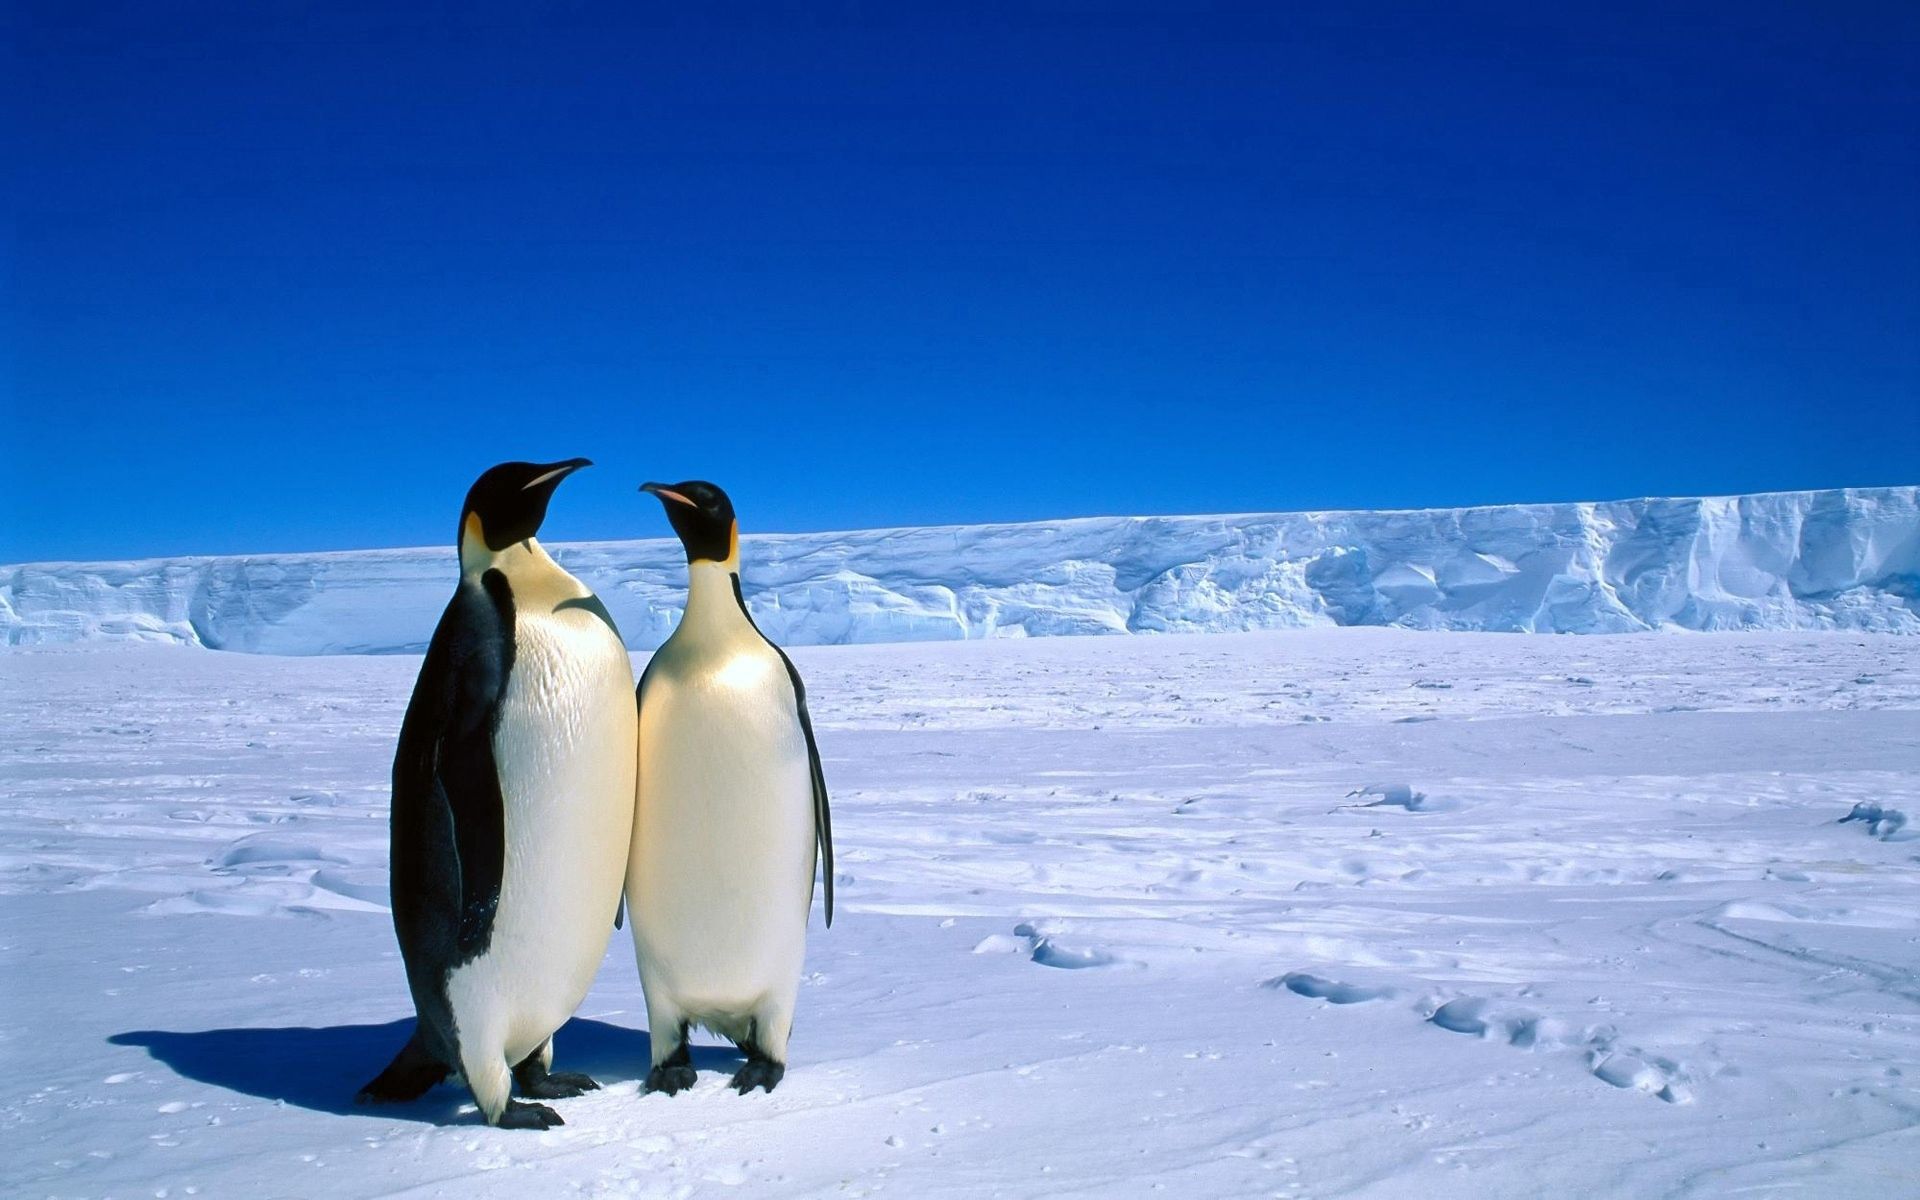 Скачать обои Антарктида на телефон бесплатно